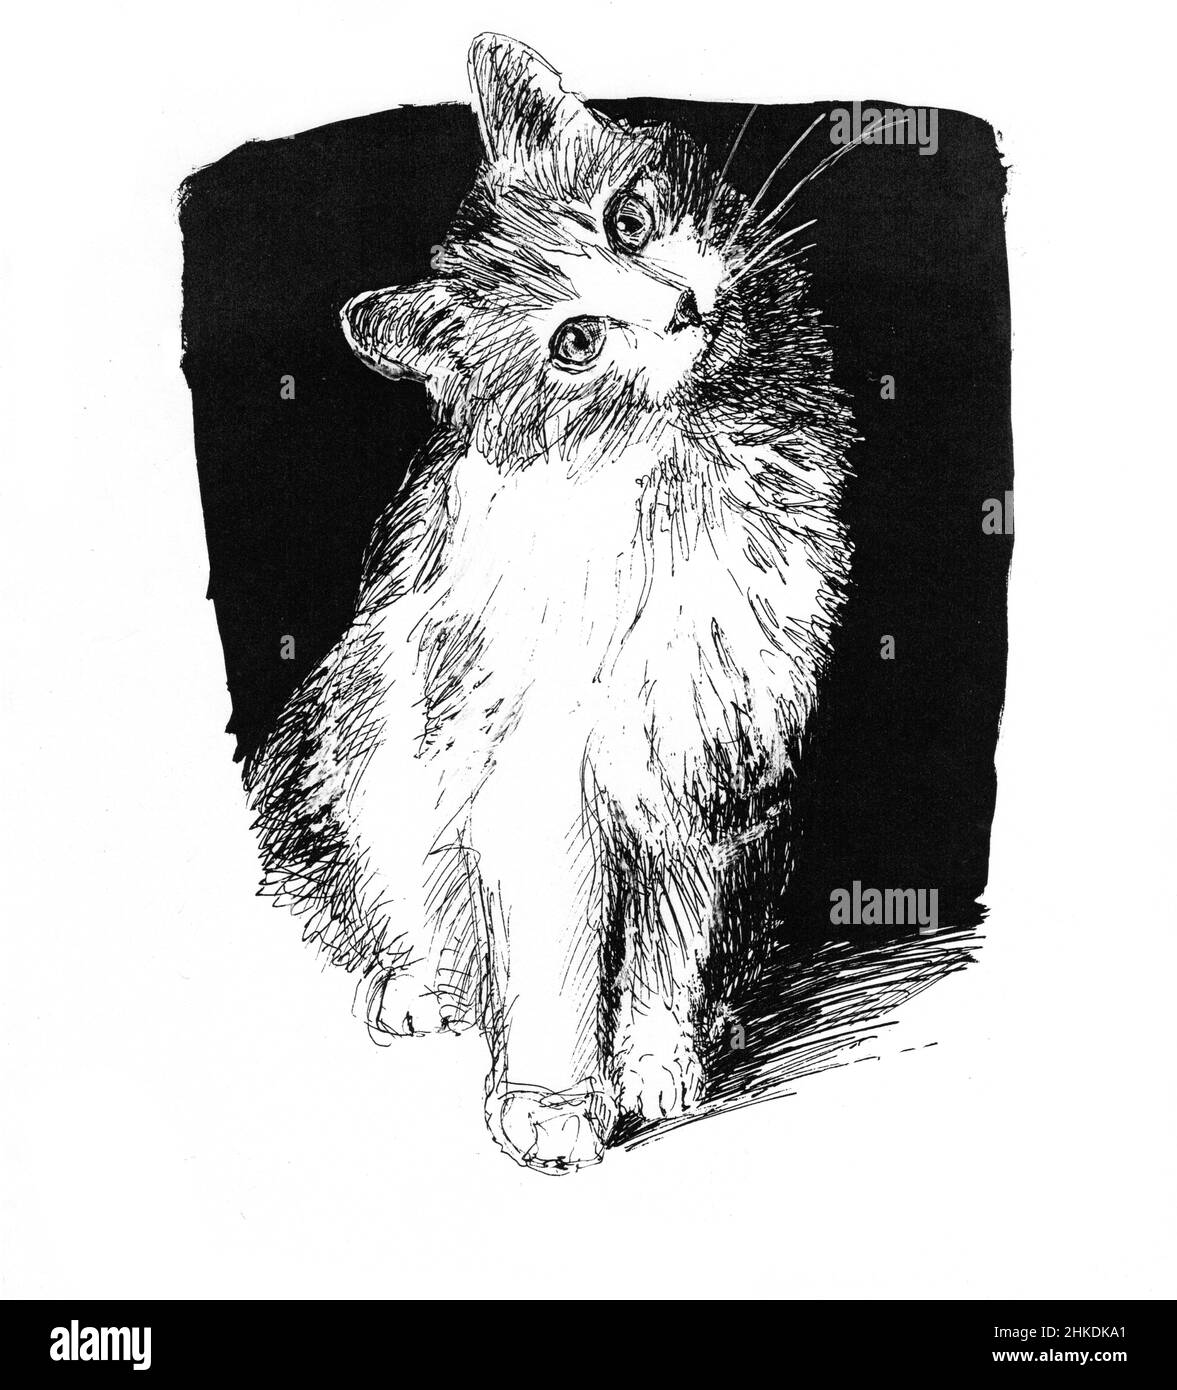 Un adorable chaton regarde sur l'inclinaison de sa tête.Dessin de stylo noir et blanc montrant la figure entière d'un chat assis vers l'avant.Arrière-plan noir. Banque D'Images